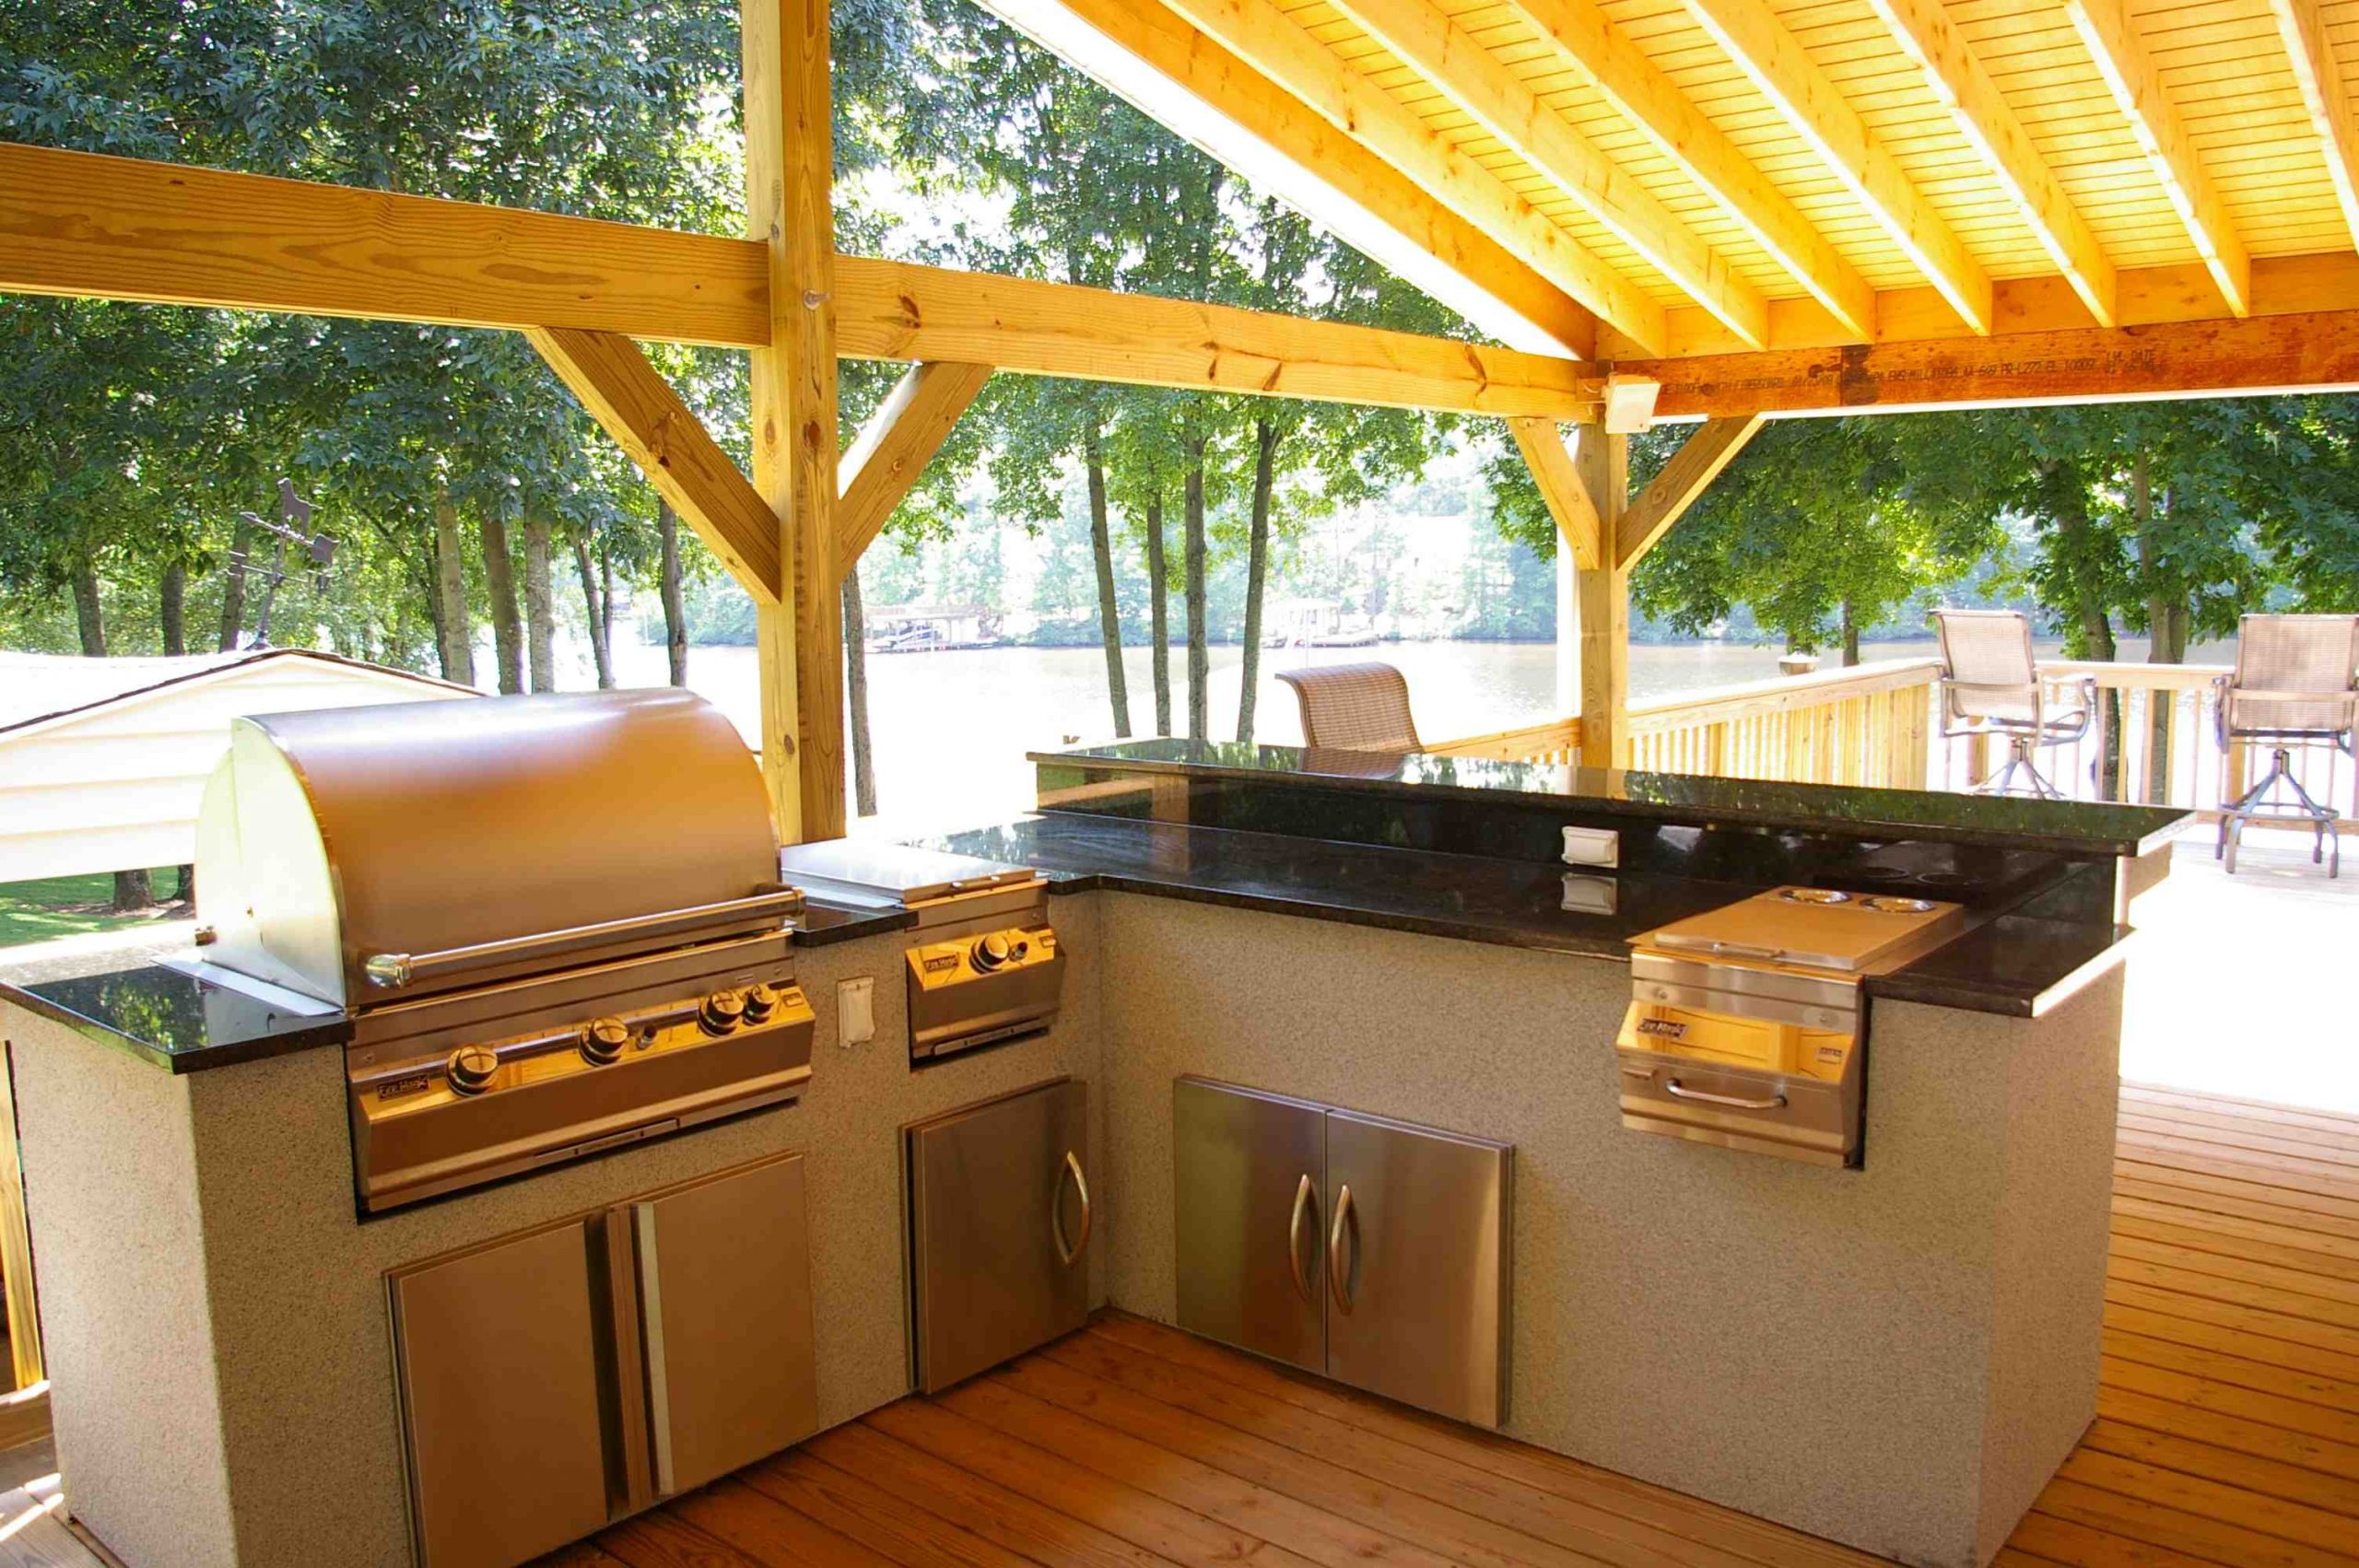 Outdoor Patio Kitchen Designs
 Outdoor Kitchen Design How to Design Outdoor Kitchen